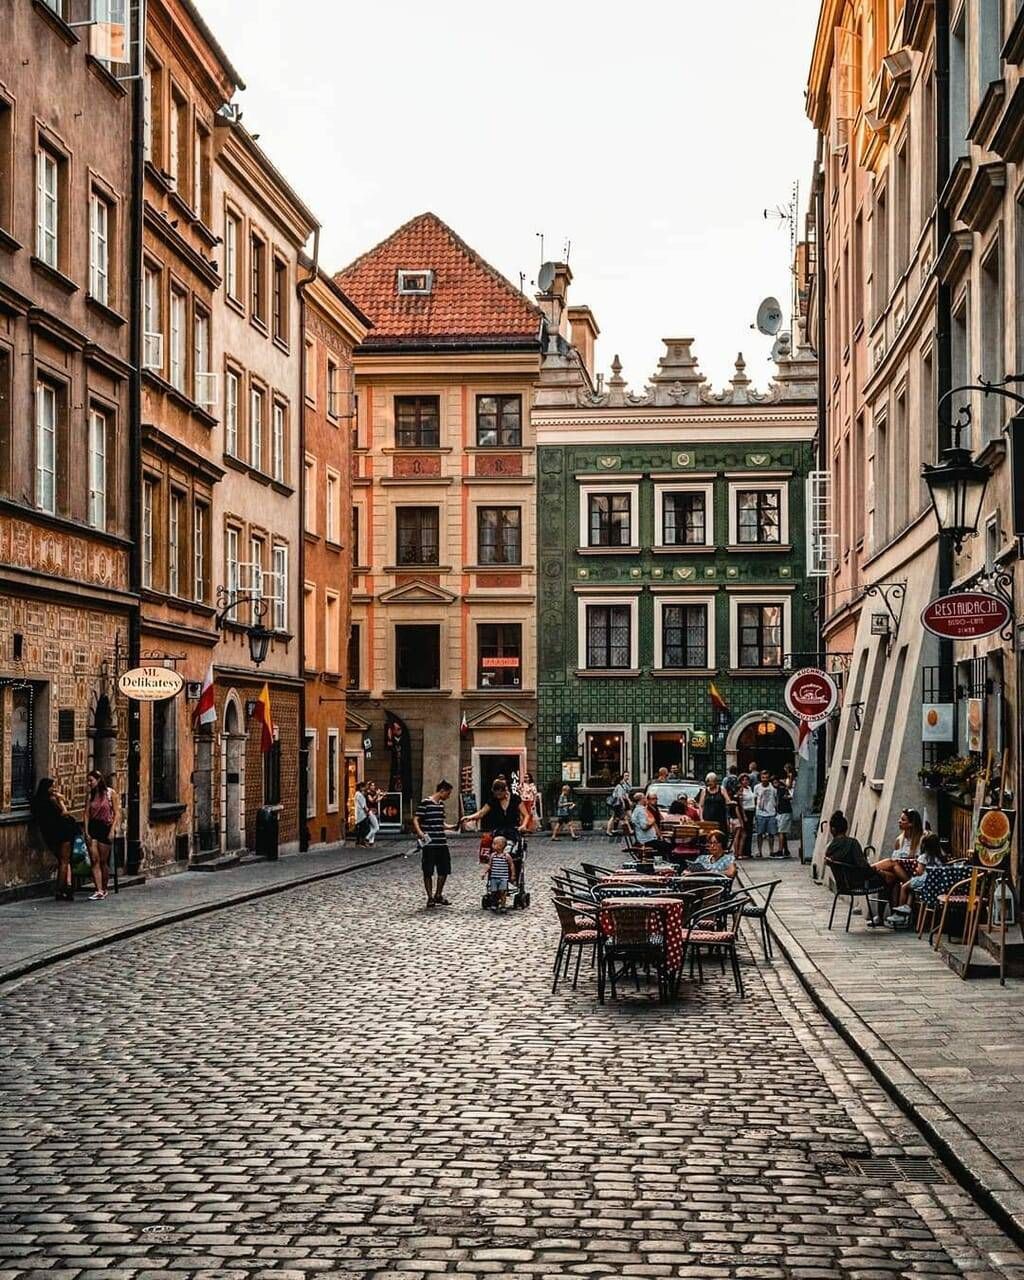  Polen Hintergrundbild 1024x1280. Hairstyles & Beauty. Warsaw old town, Poland travel, Europe destinations